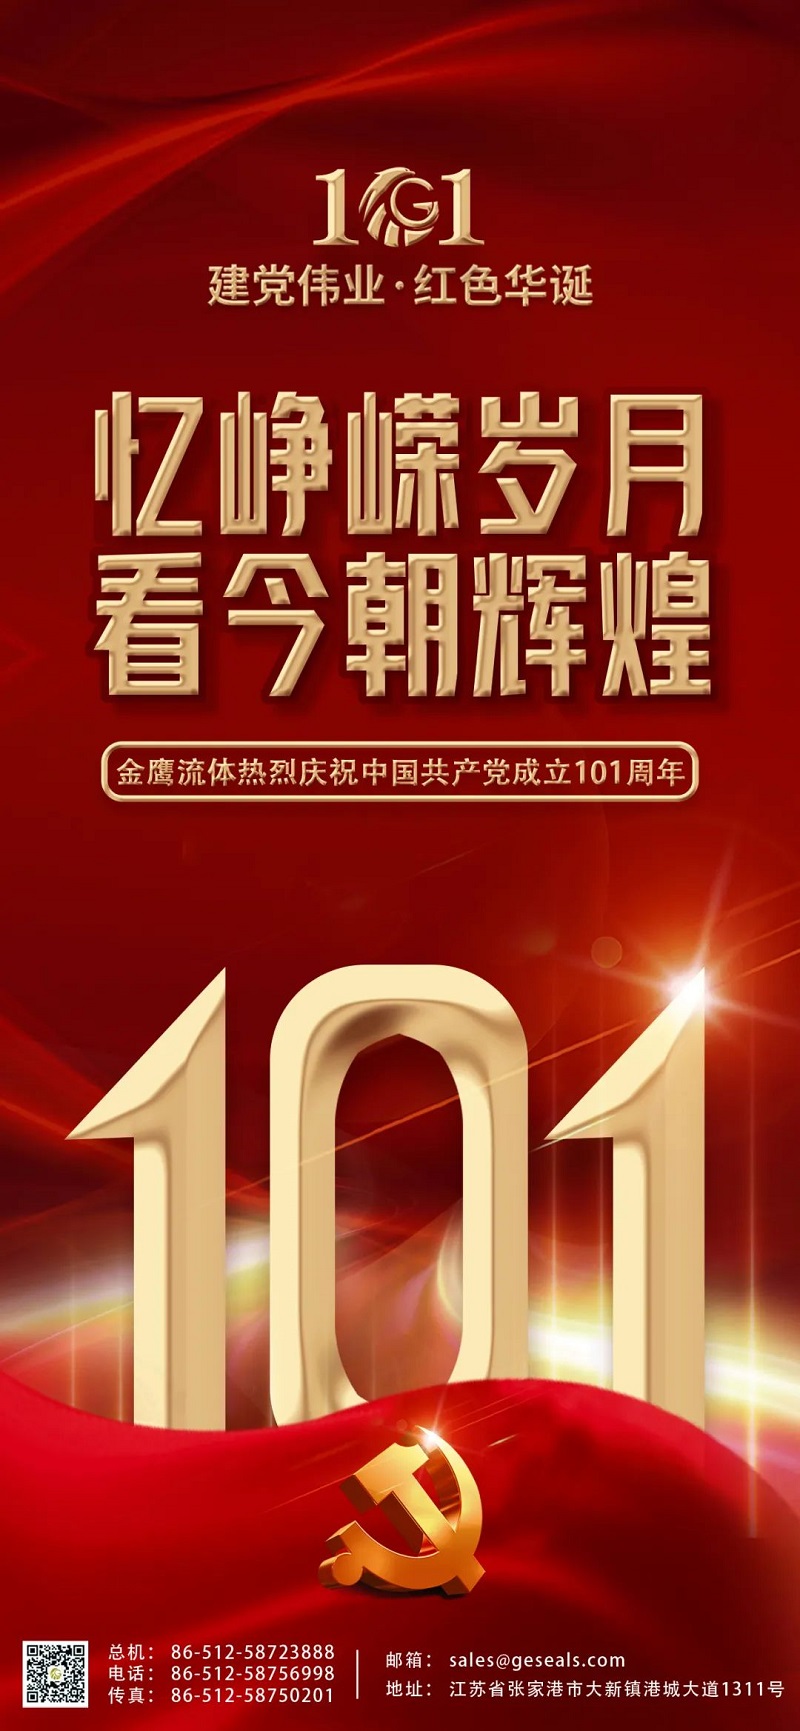 七一建黨節 | 熱烈慶祝中國共產黨建黨101周年